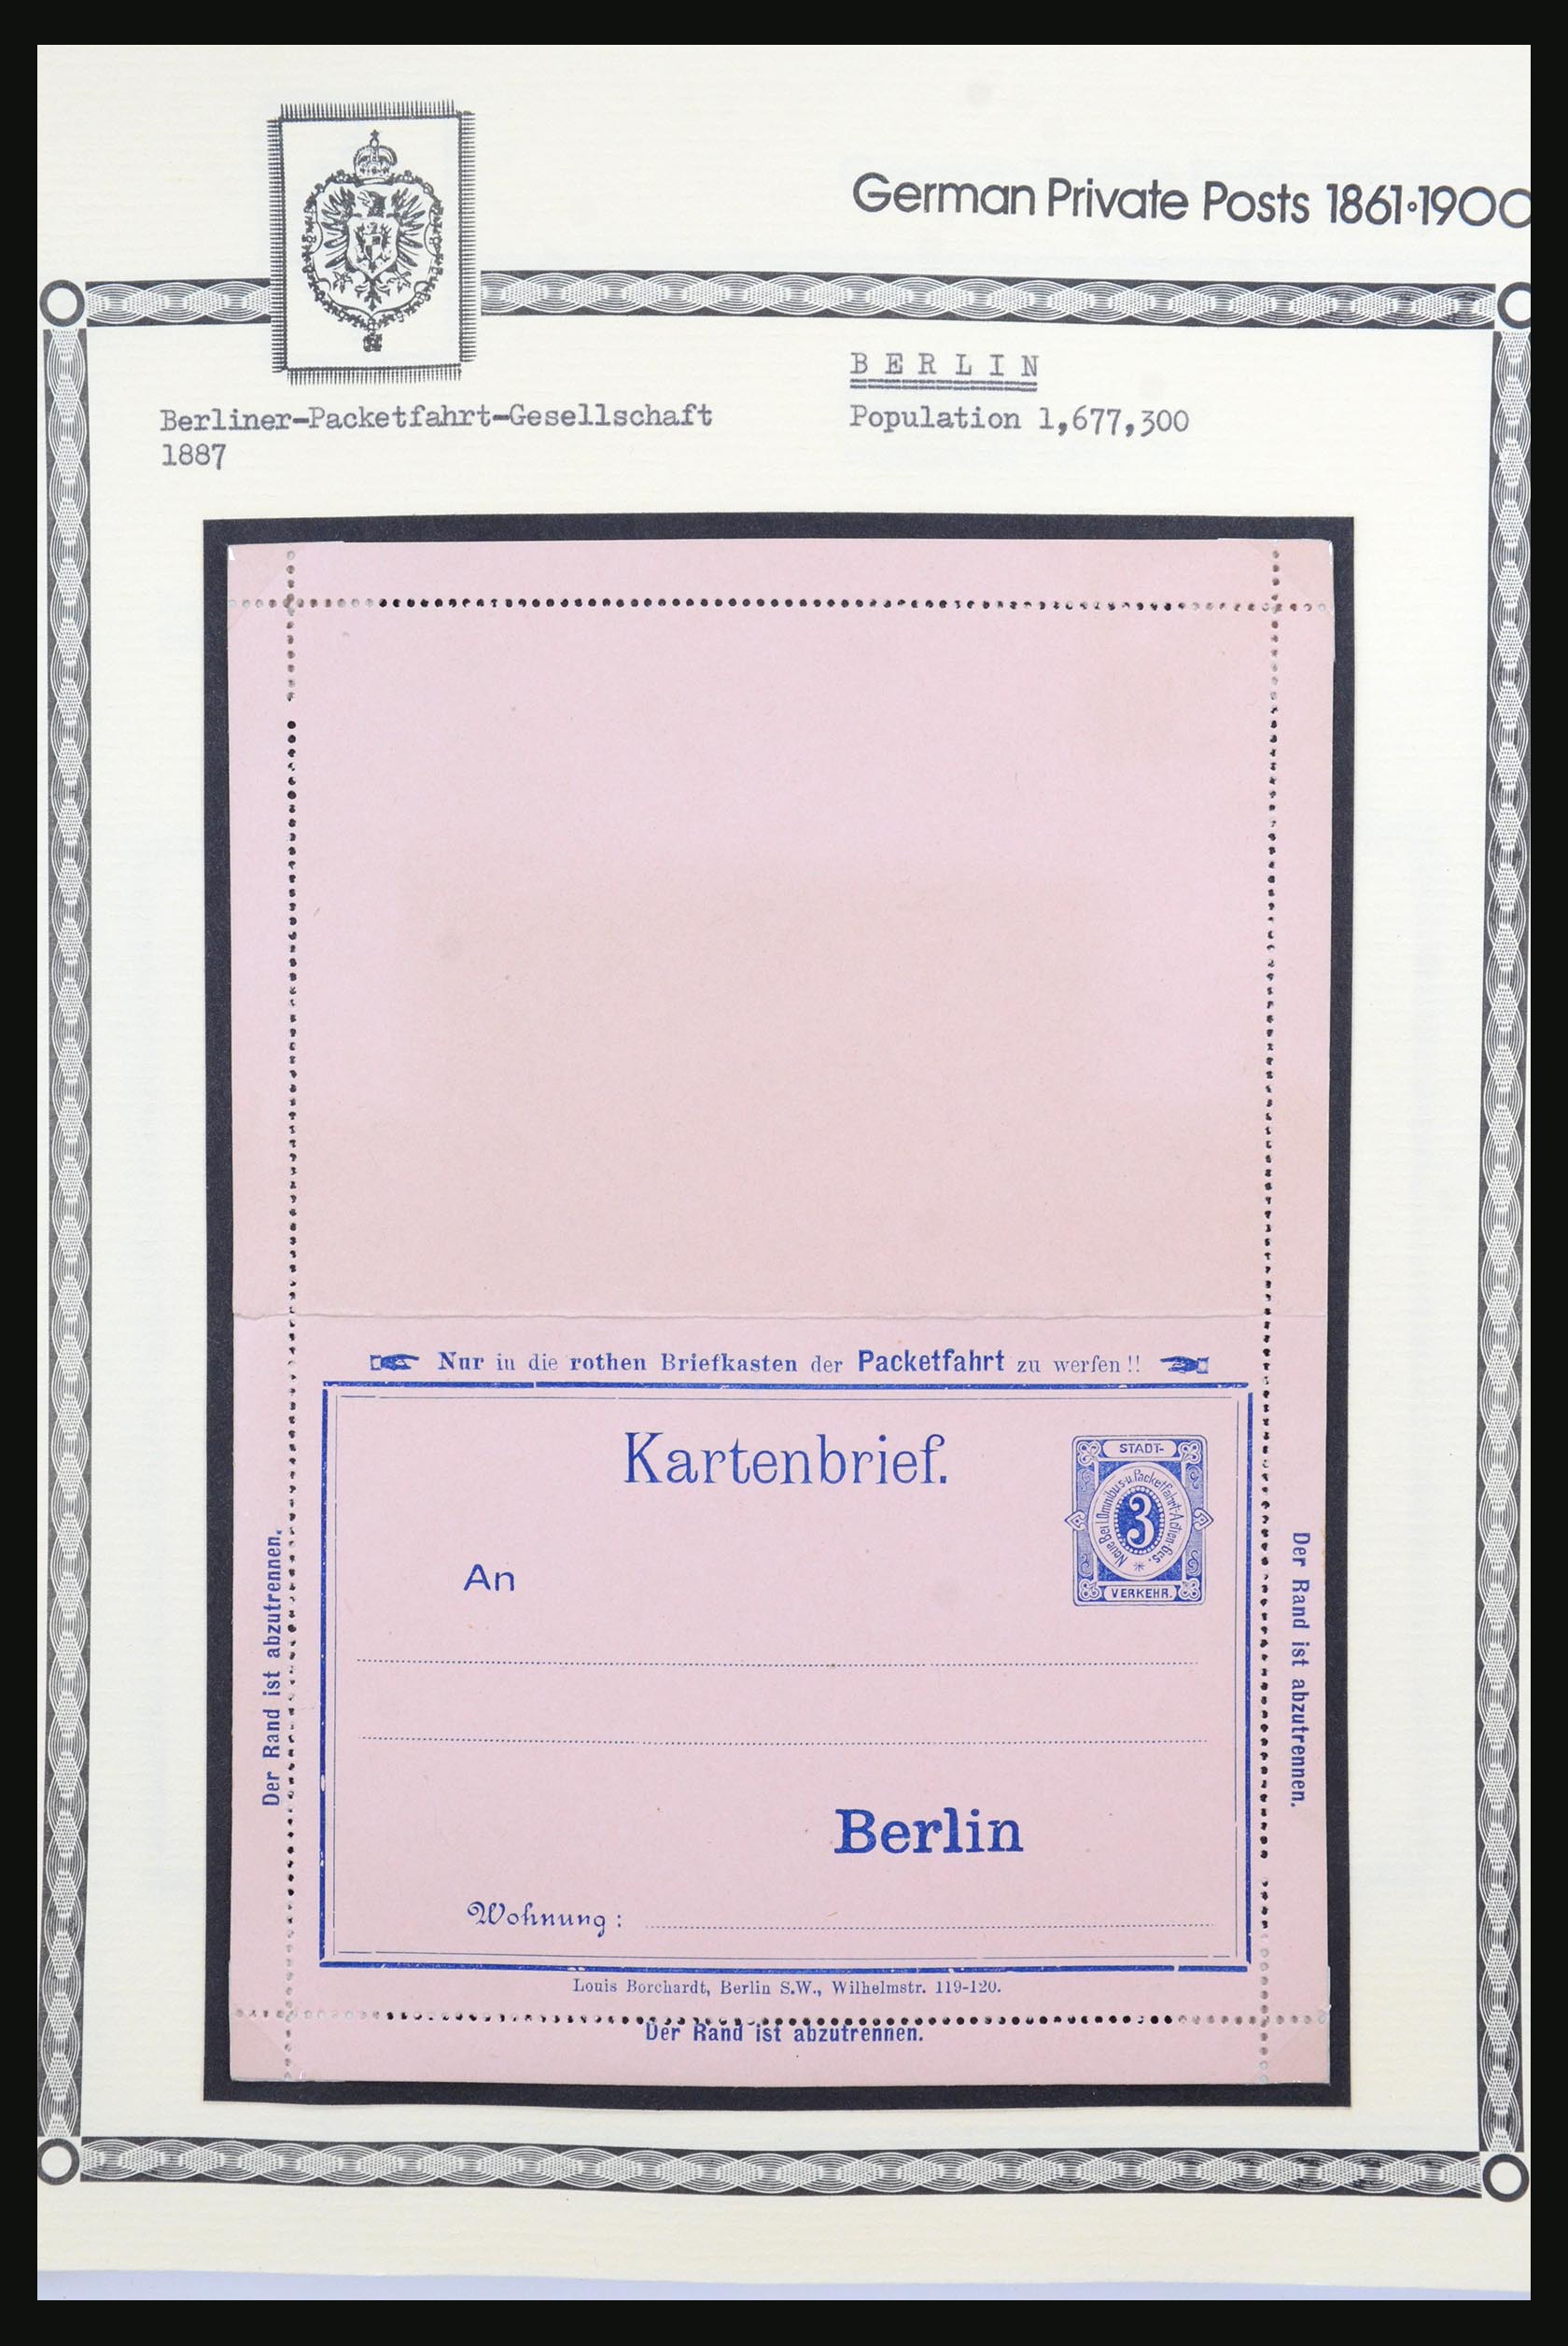 31578 016 - 31578 Germany localpost 1861-1900.